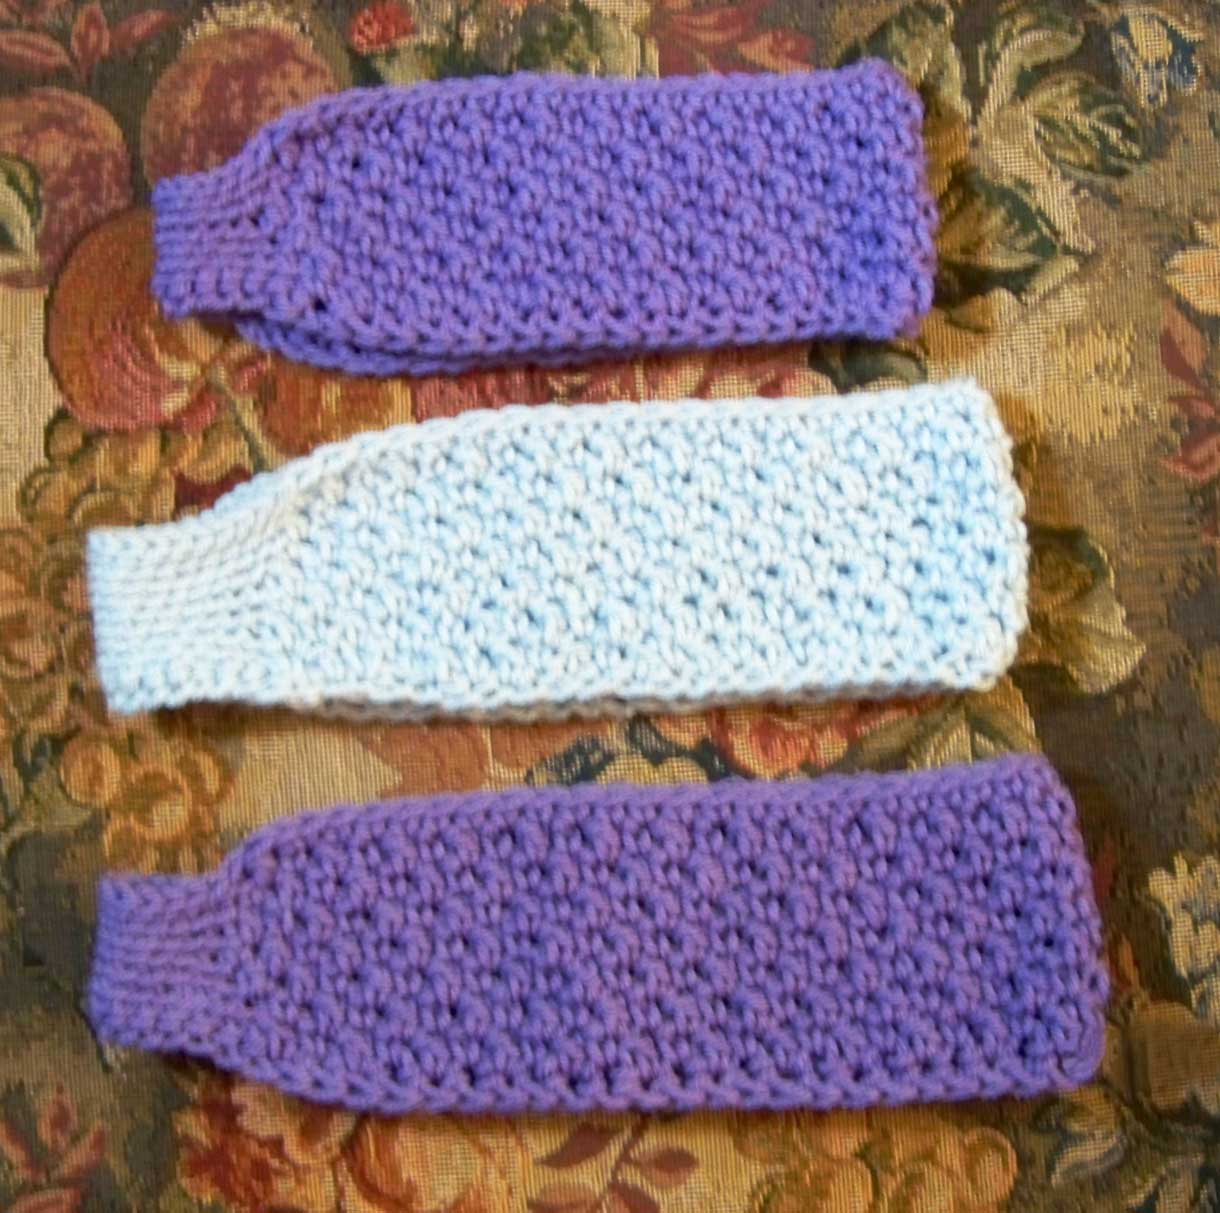 Crochet Headbands Ear Warmers Patterns Free Complimentary Pattern Textured Headbandear Warmer The Cotton Gin